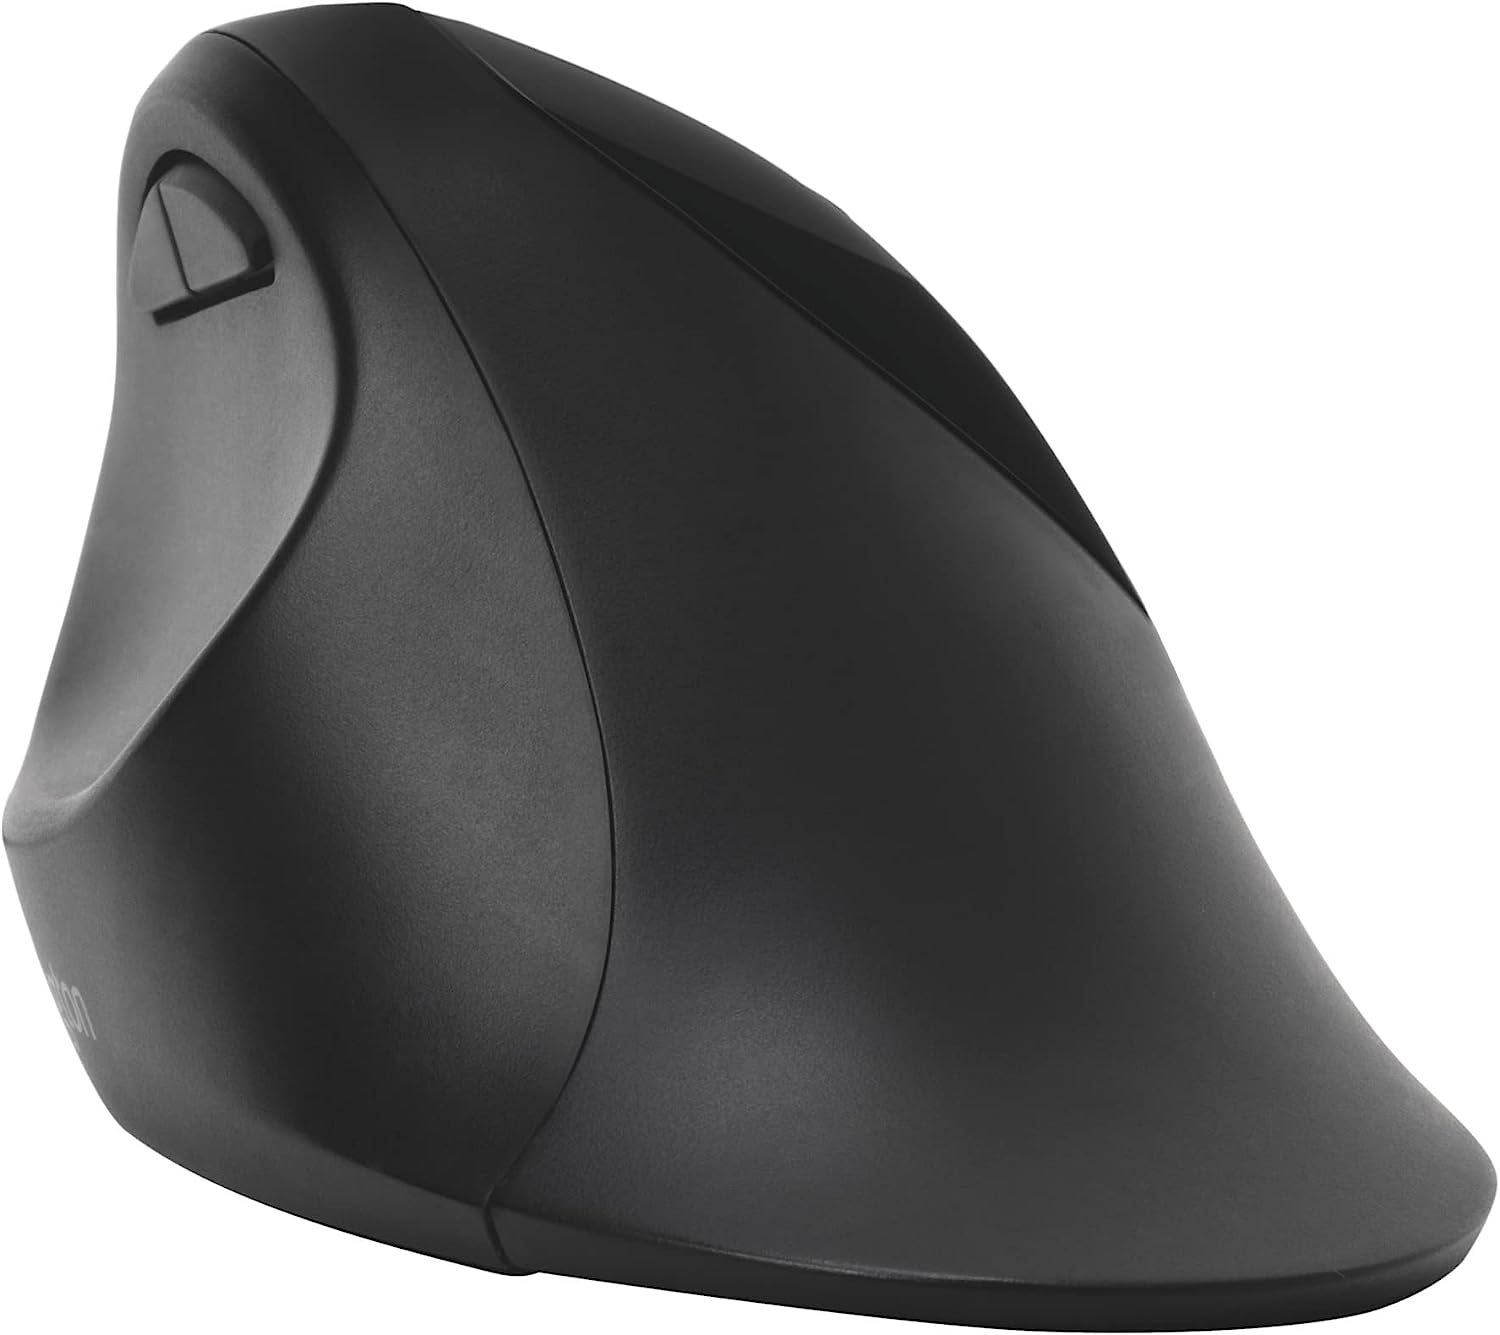 Kensington Pro Fit Ergo Wireless Keyboard & Mouse Black